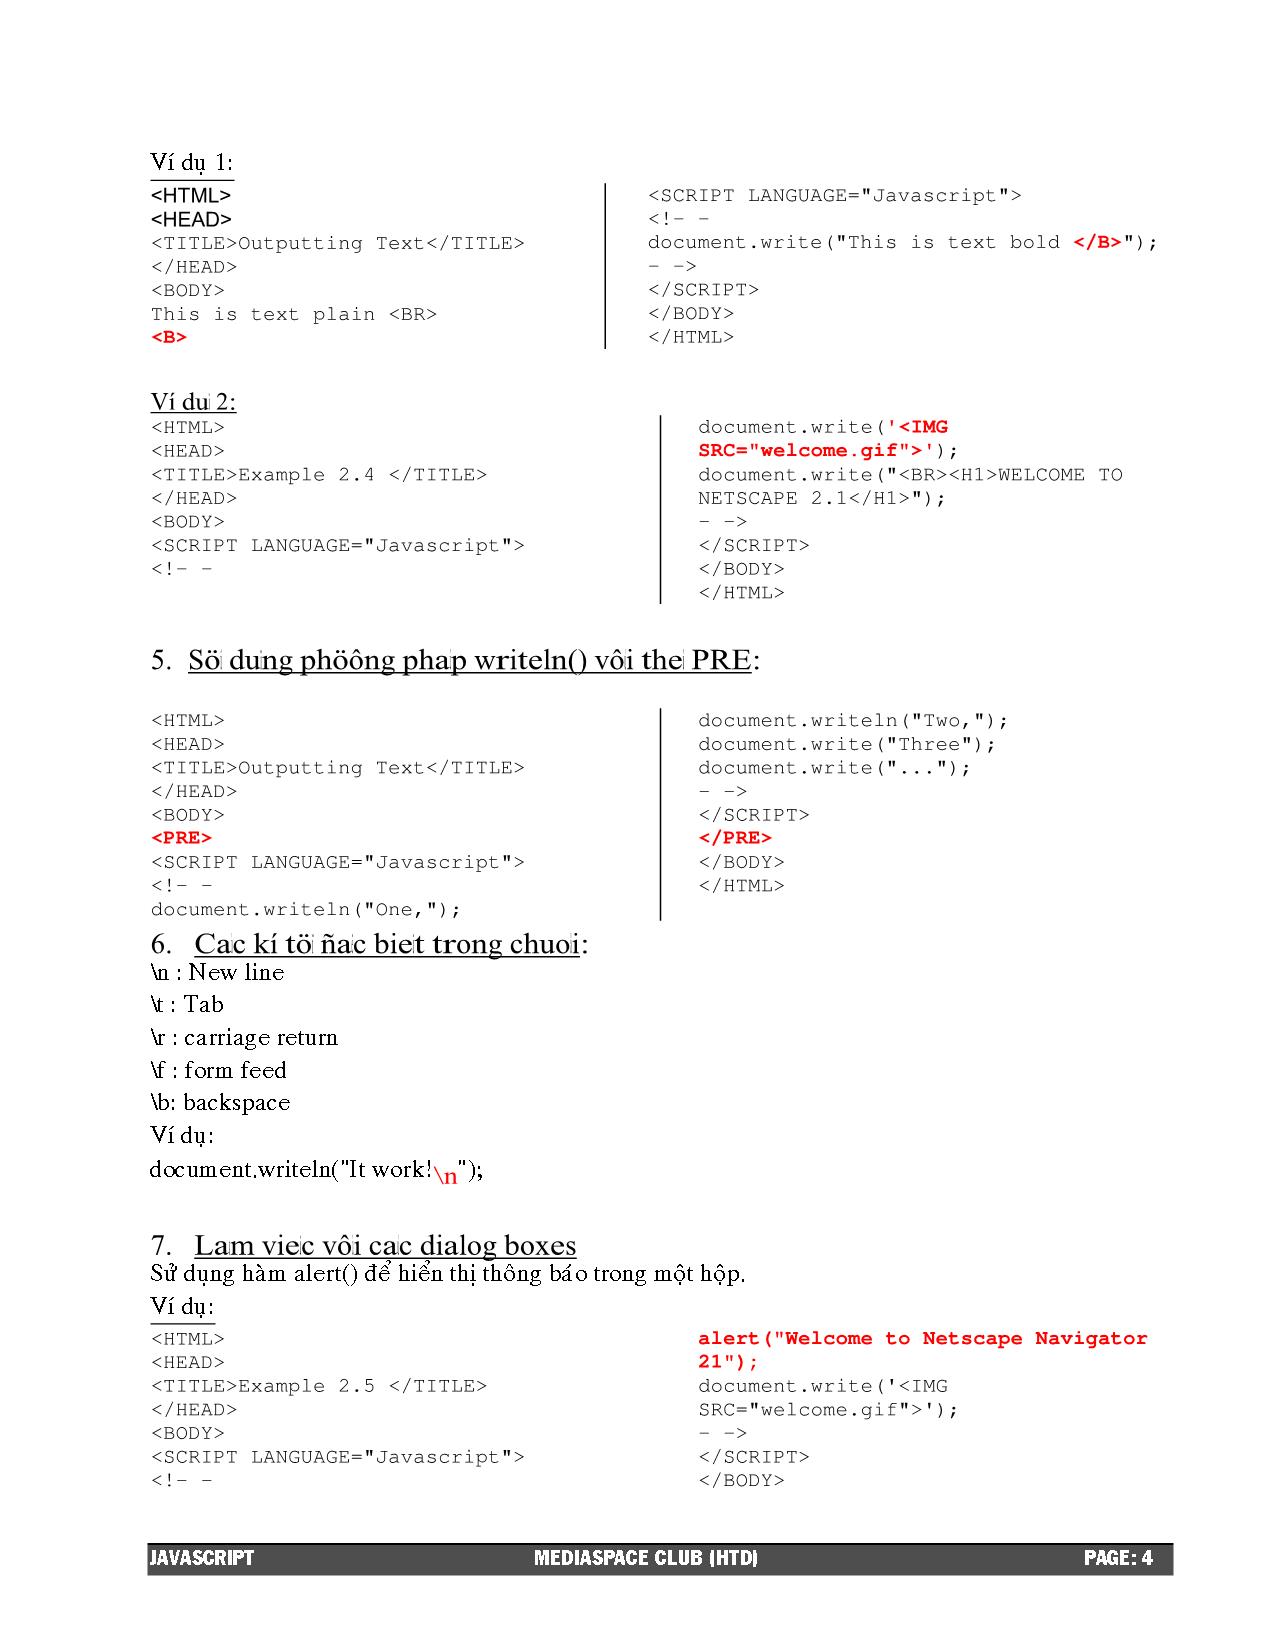 Giáo trình JavaScript trang 4